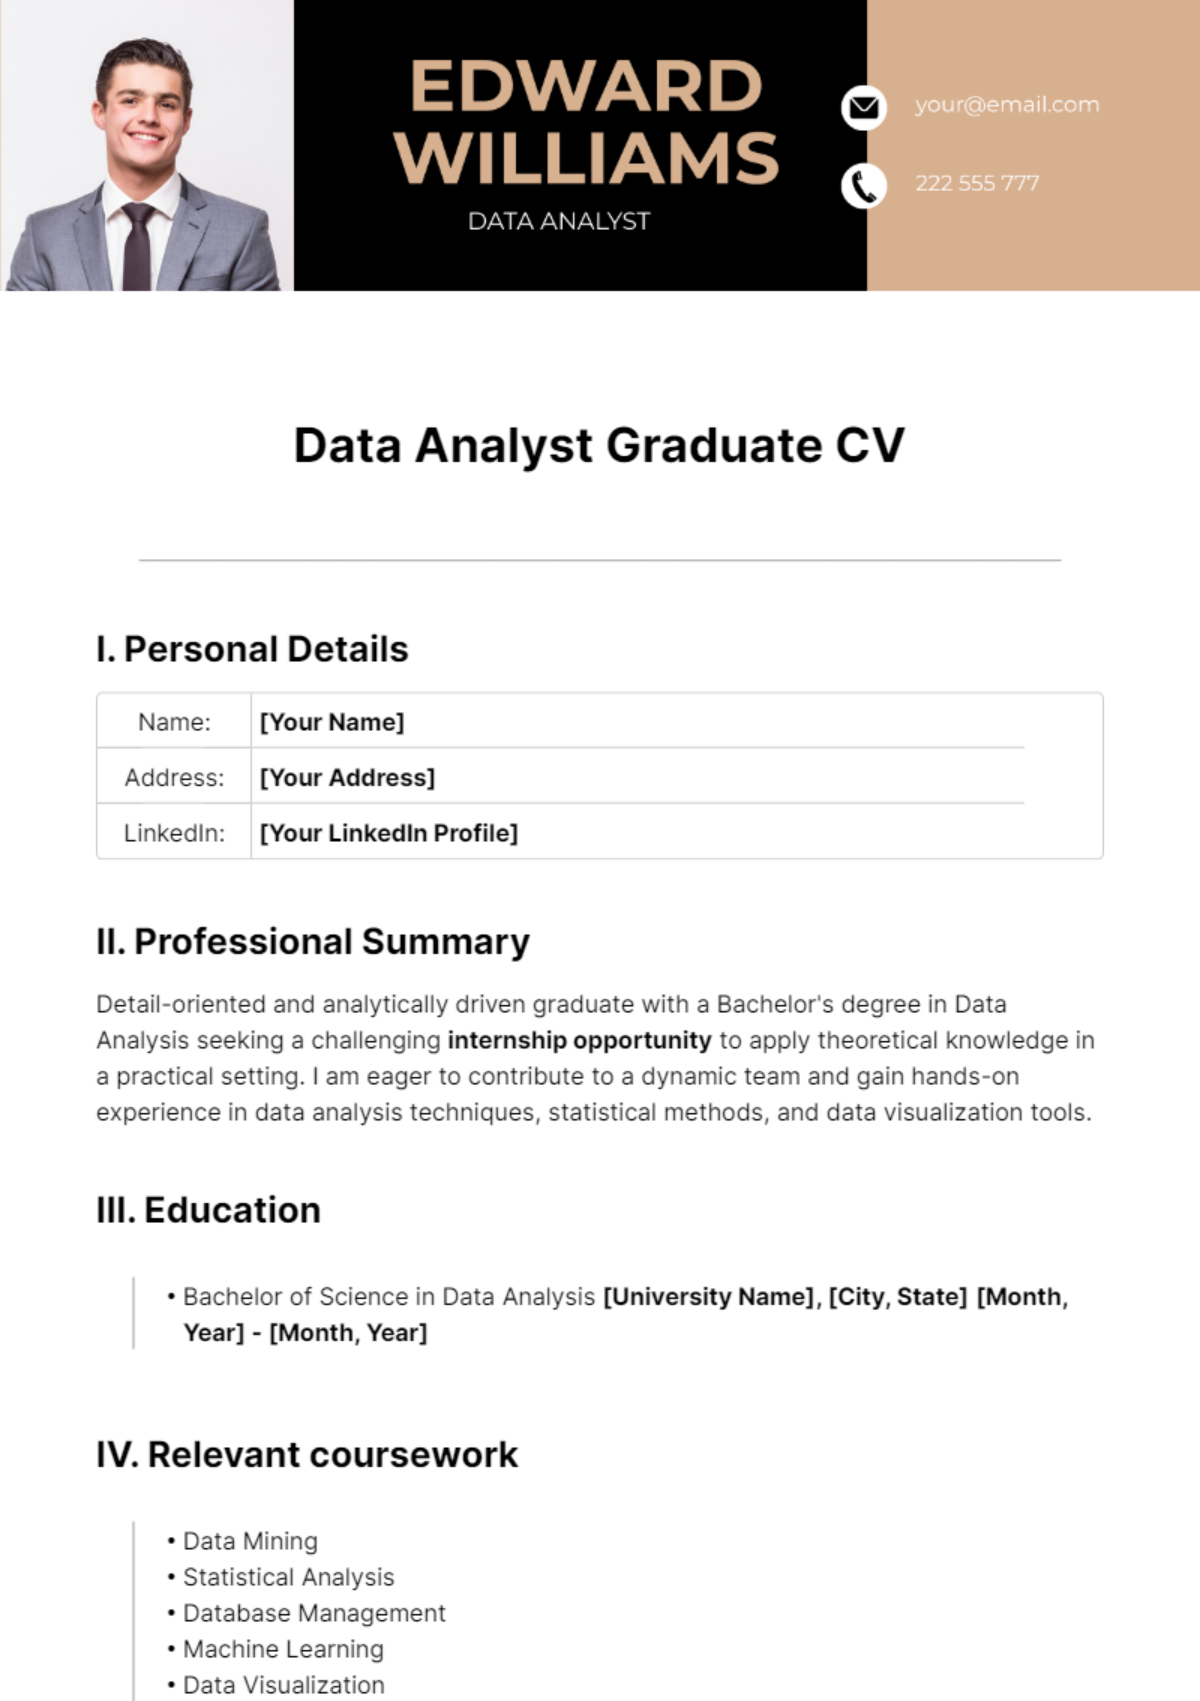 Data Analyst Graduate CV Template